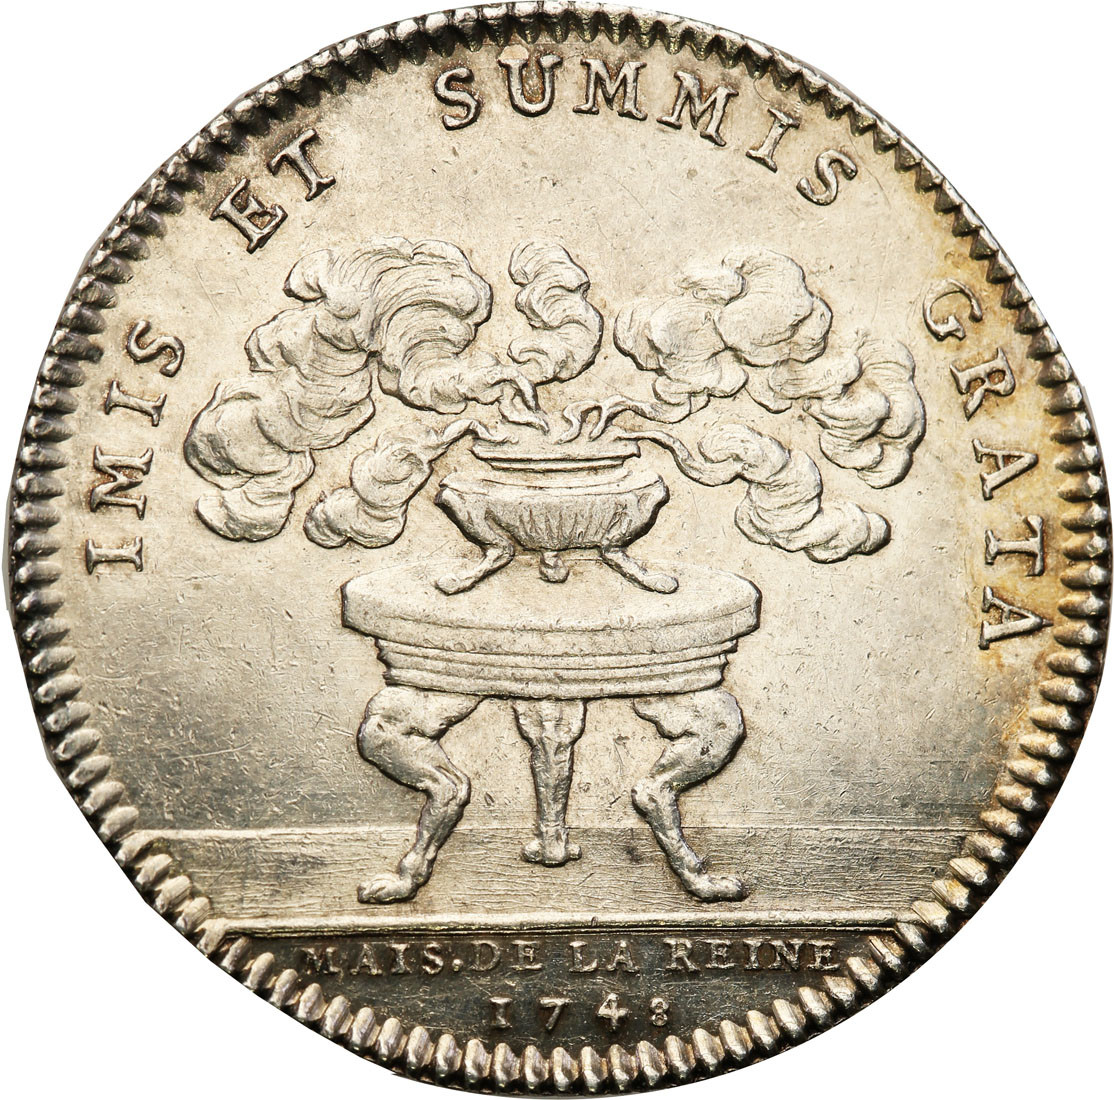 Polska, Francja. Maria Leszczyńska, królowa Francji. Medal 1748, srebro